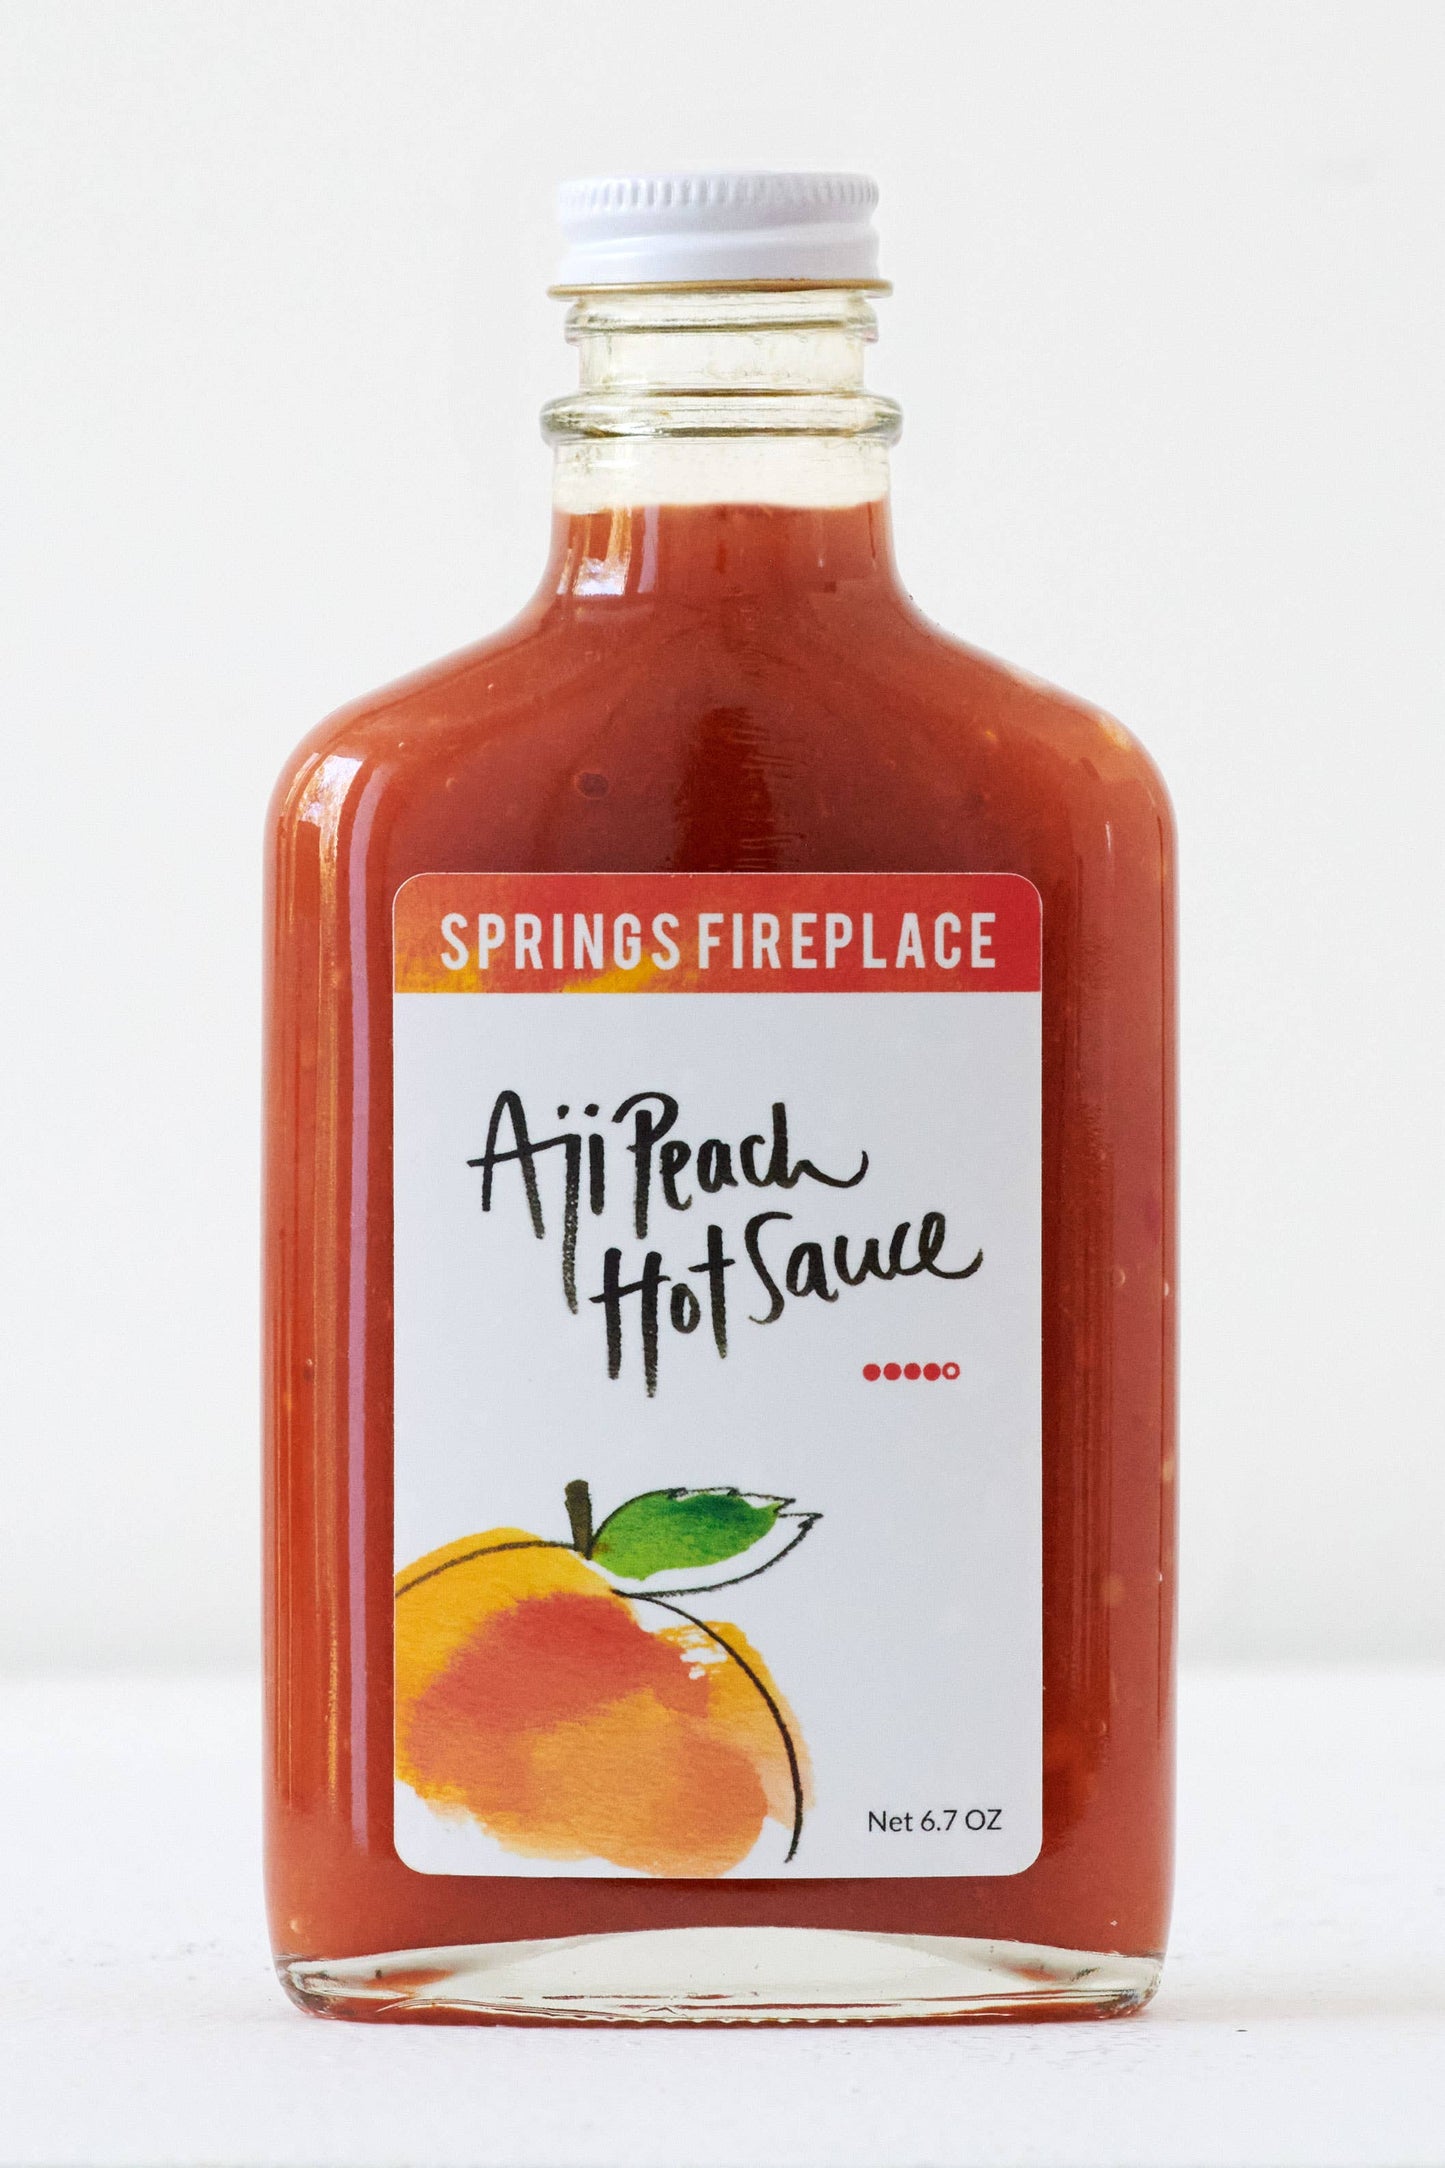 Aji Peach hot sauce